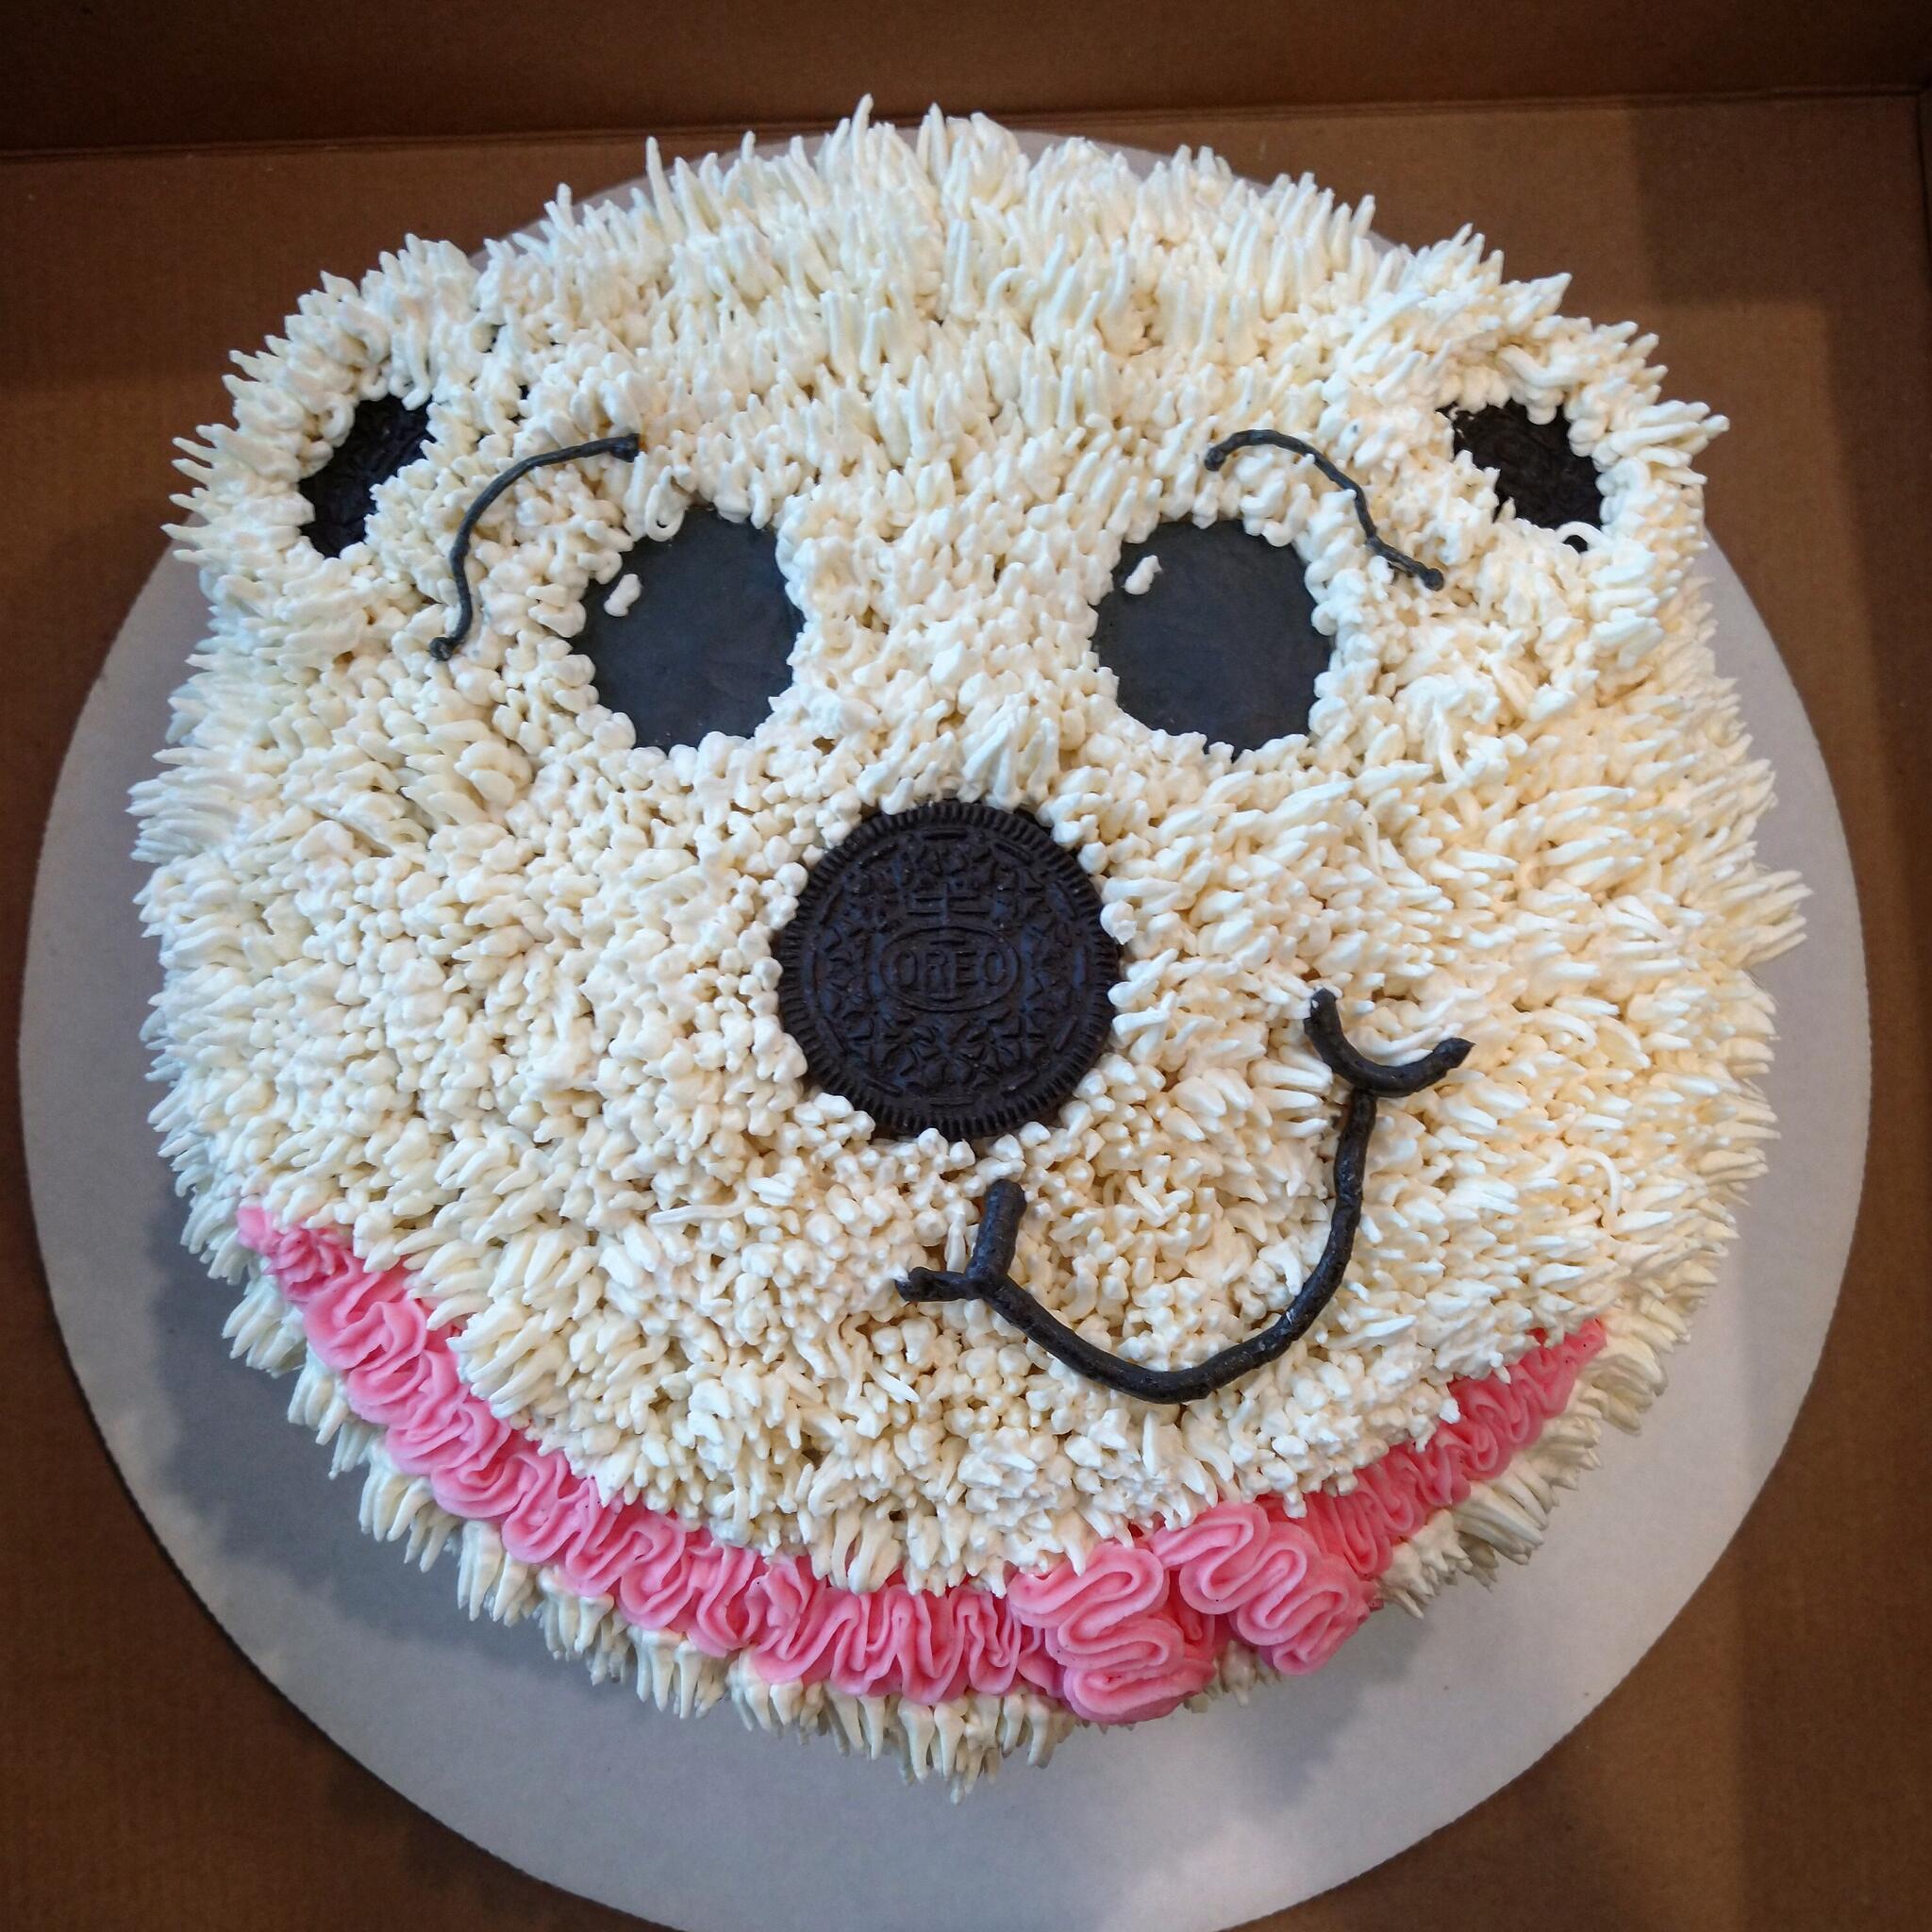 Polar Bear Cake Tutorial for Crafty Home Bakers - XO, Katie Rosario